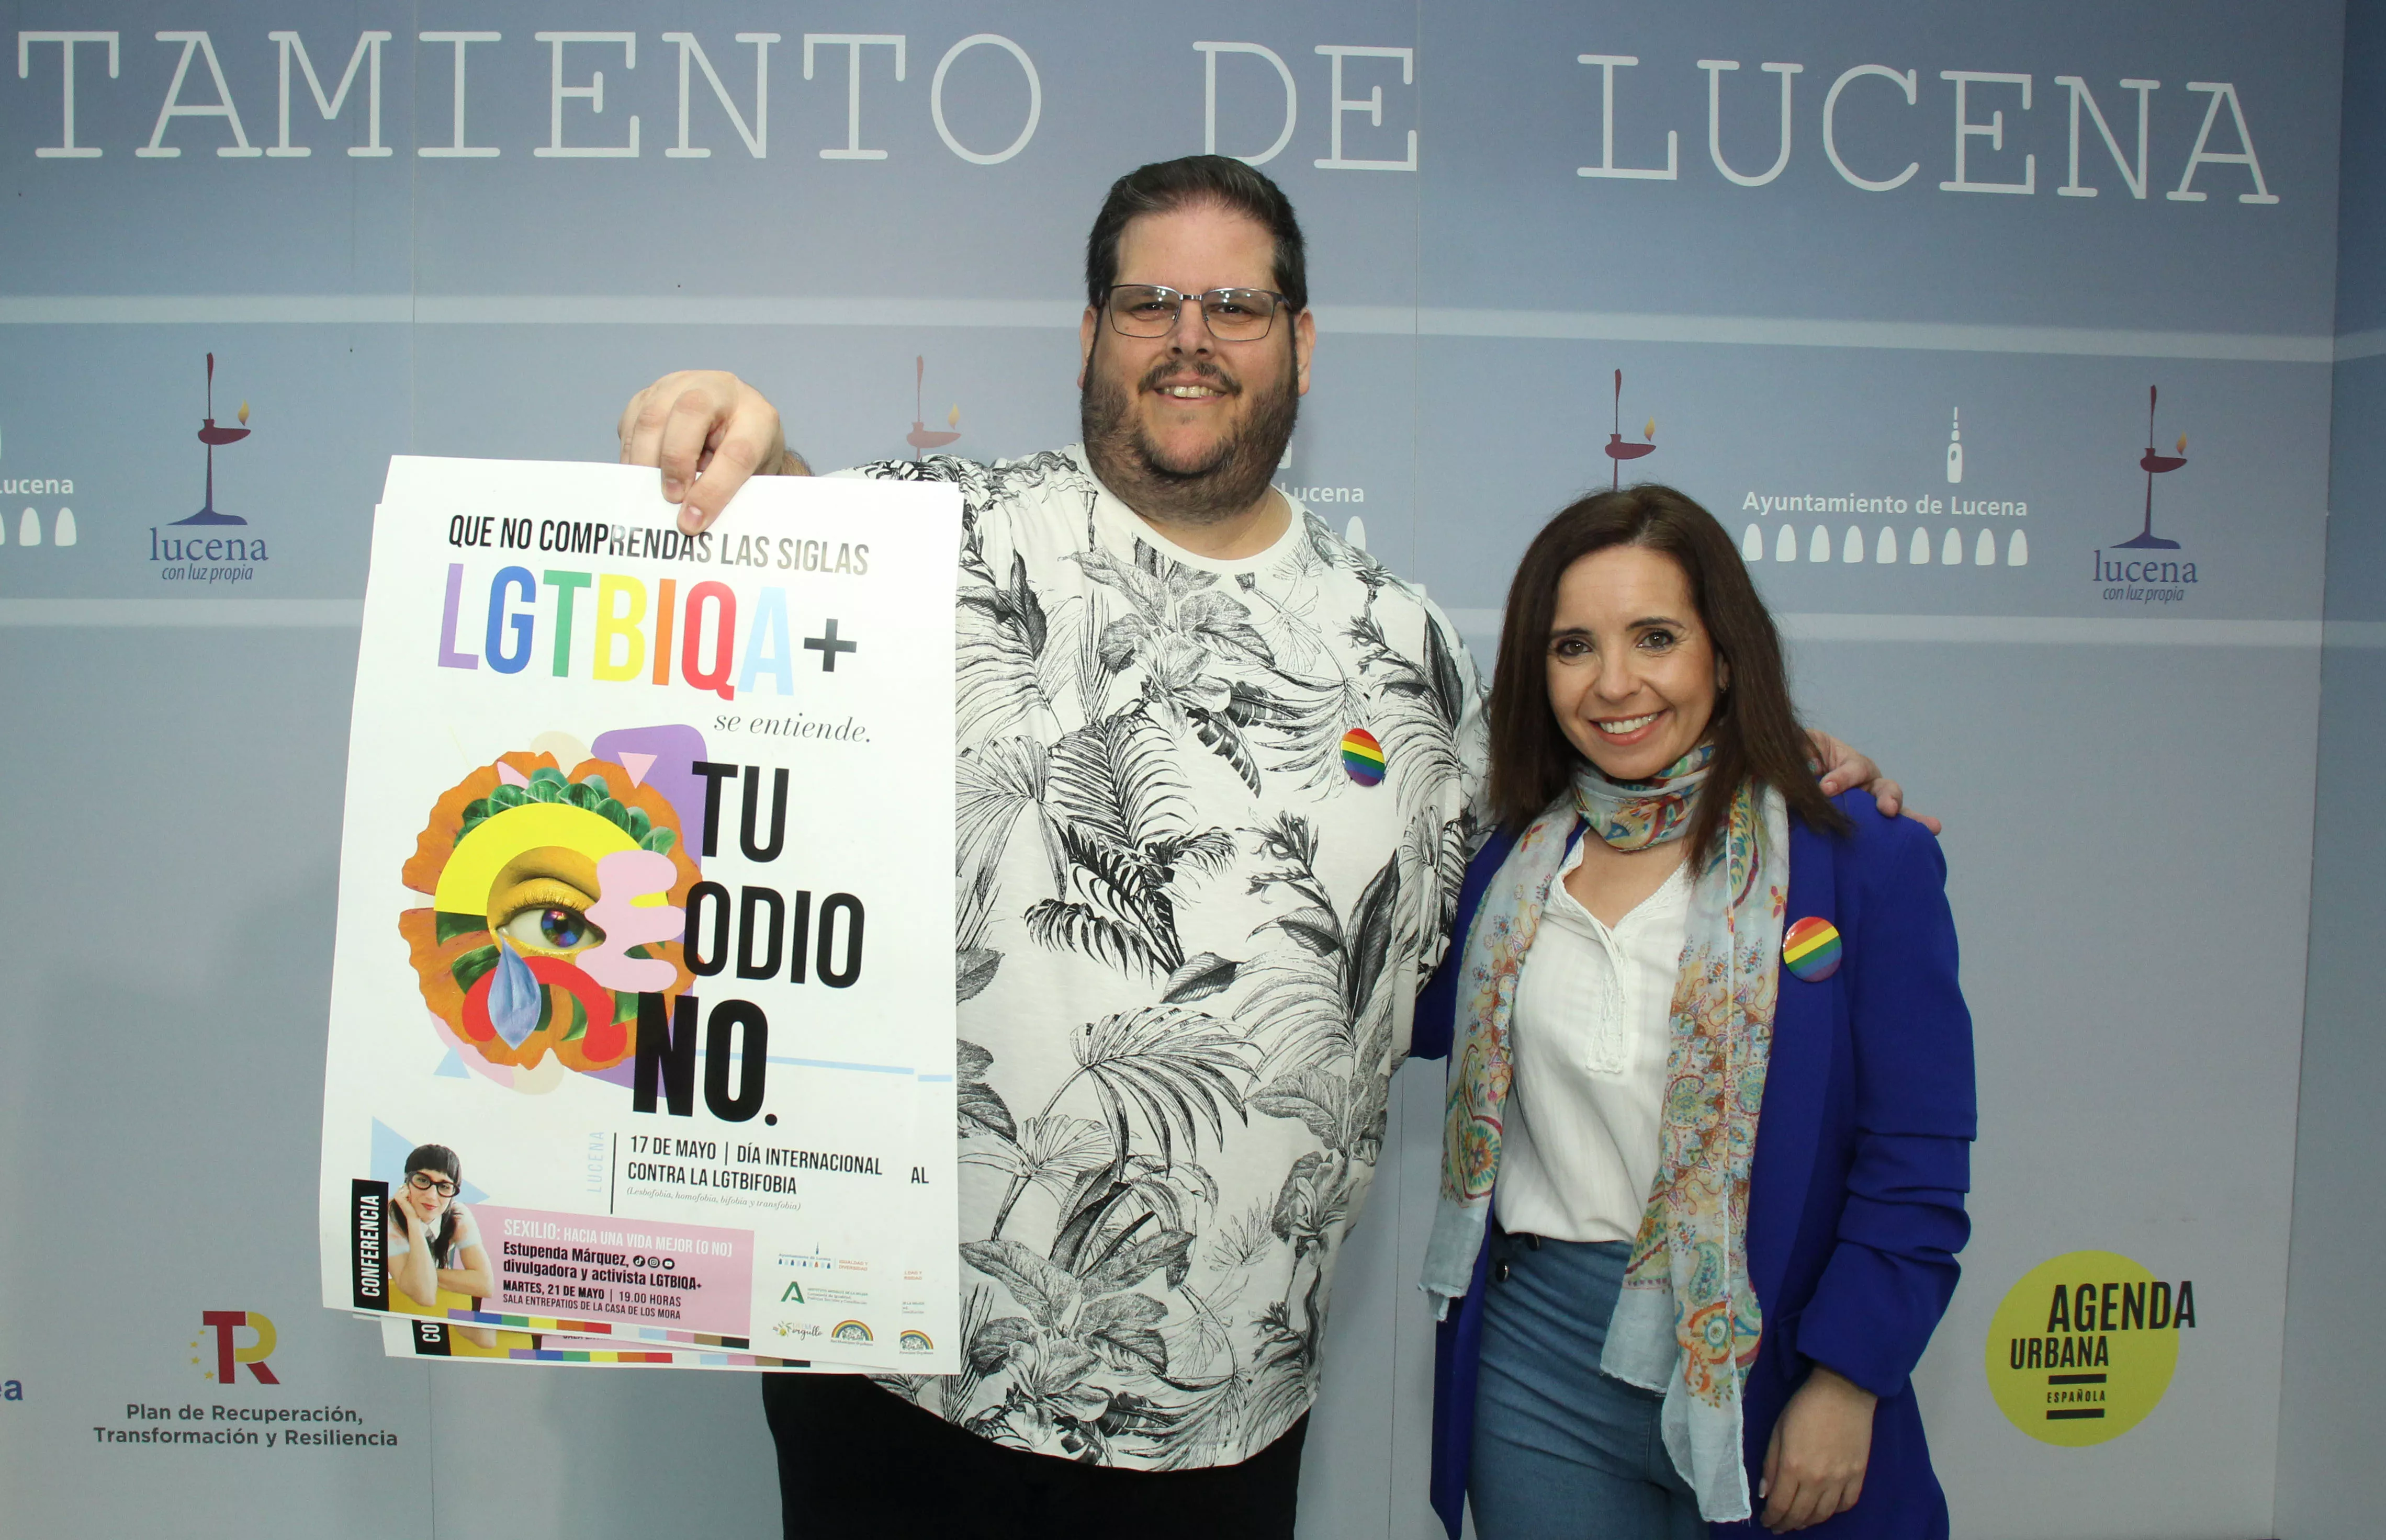 Presentación de la ponencia de Estupenda Márquez, con motivo del Día Internacional contra la LGTBIfobia 